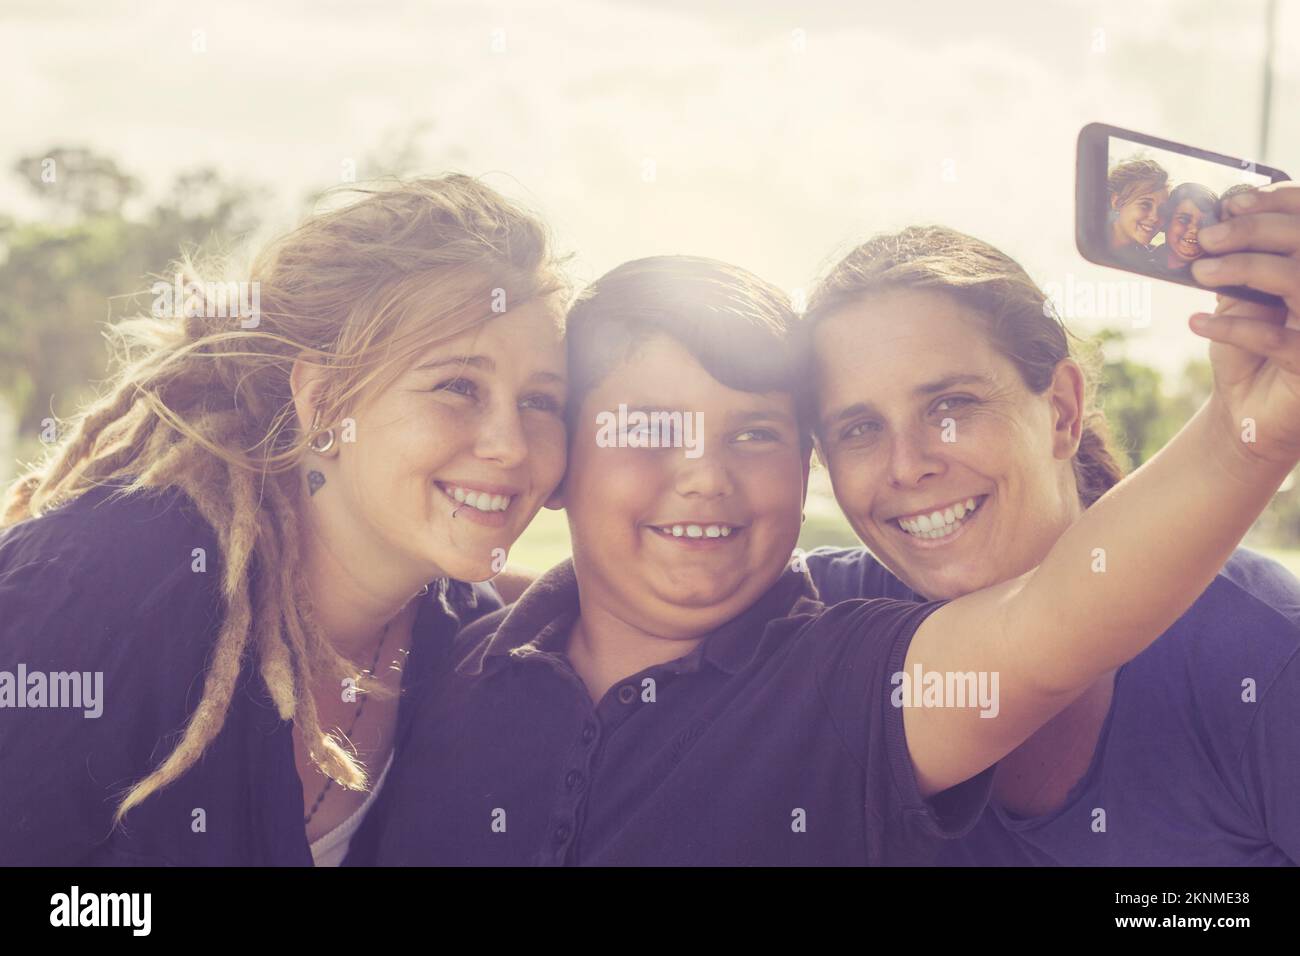 Fröhliche australische multikulturelle Familie aus drei Personen, die im Freien stehen und Selfie mit dem Smartphone machen. Familien mit technischen Geräten Stockfoto